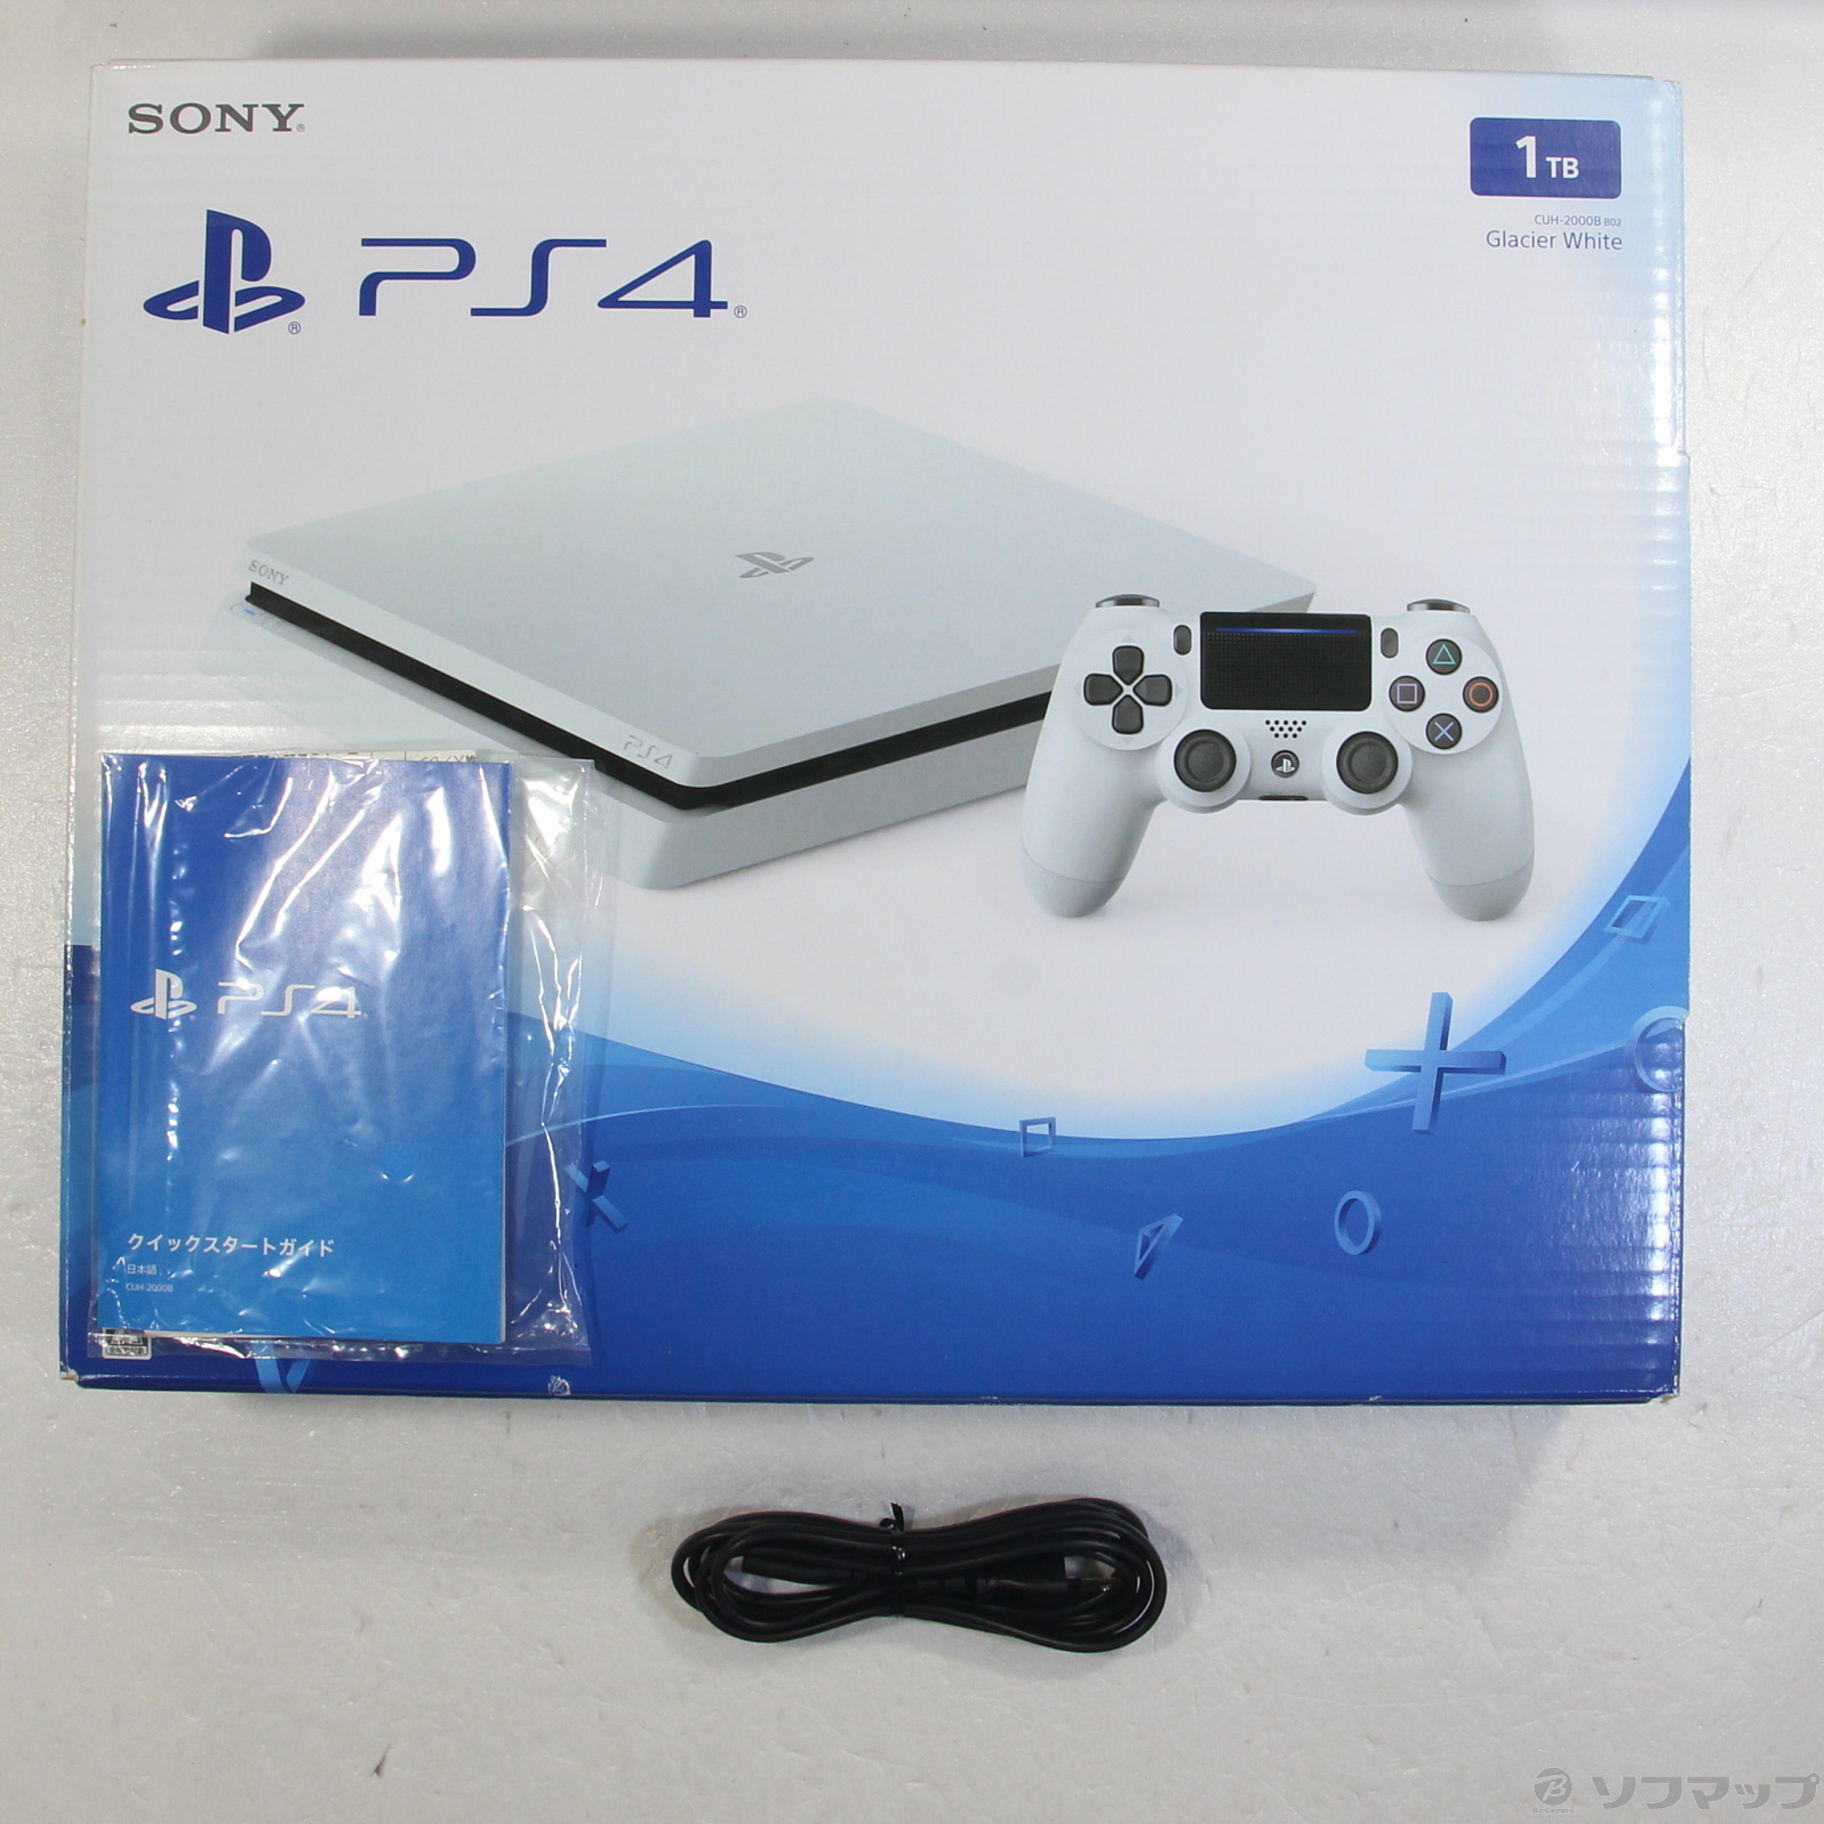 適切な価格 PlayStation®4 グレイシャー・ホワイト 1TB CUH-2000B